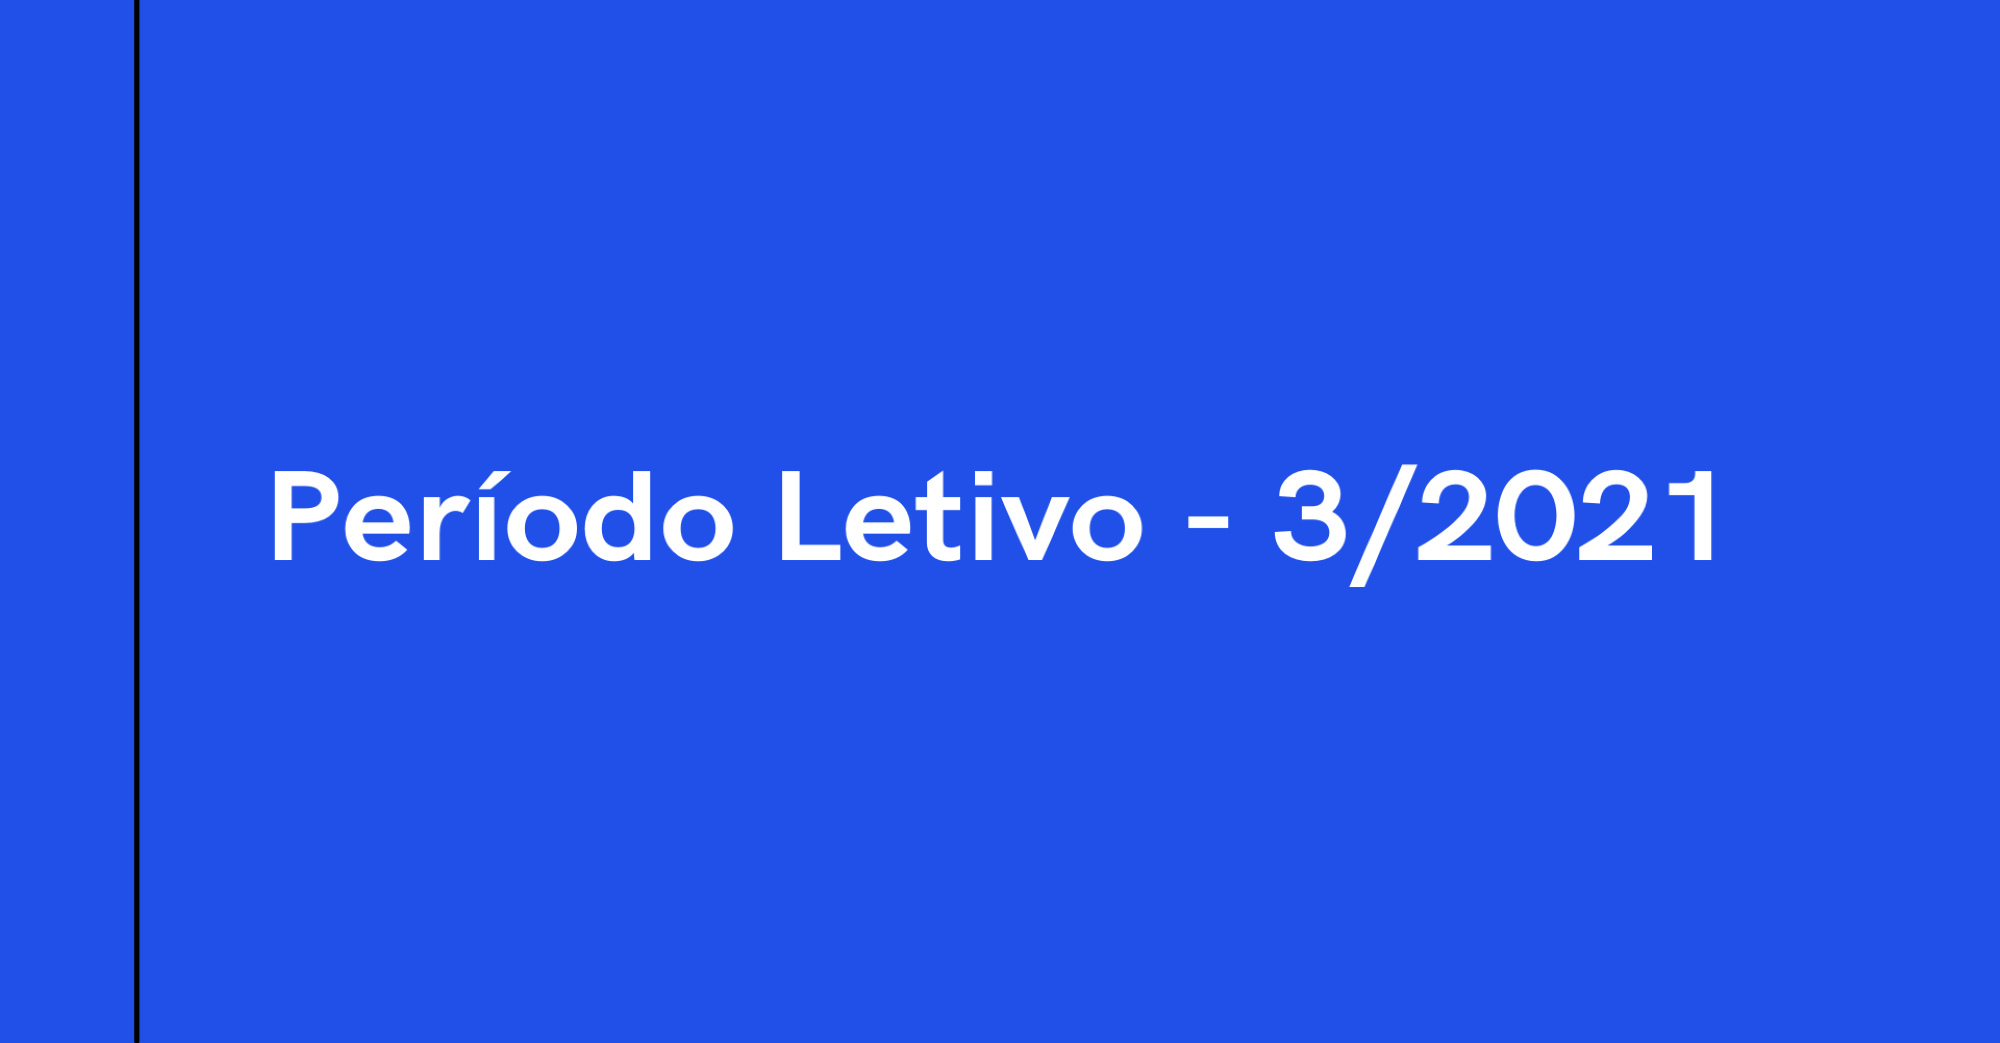 Período Letivo 3 - 2021 (PL-3/2021)